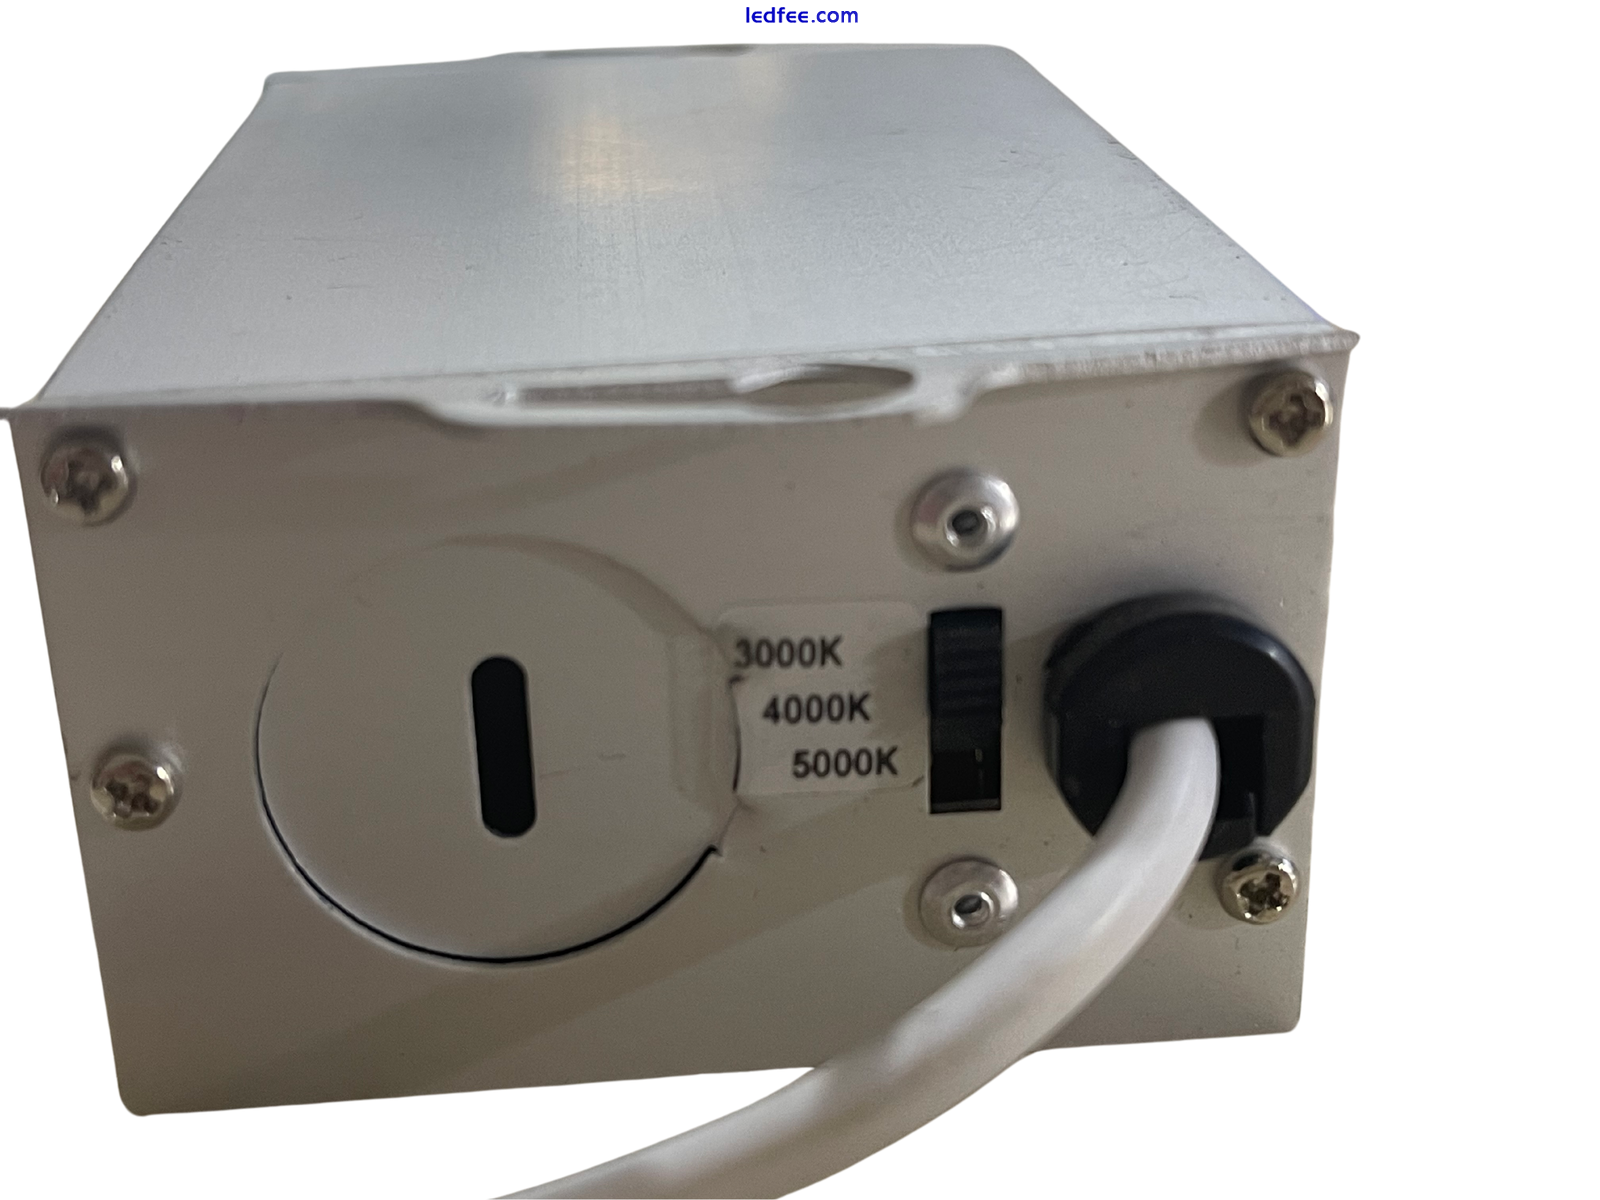 Intertek 5002327 LED Gimal Licht Modell CL-8X-ETL-COB W /3000K /4000K /5000K 1 